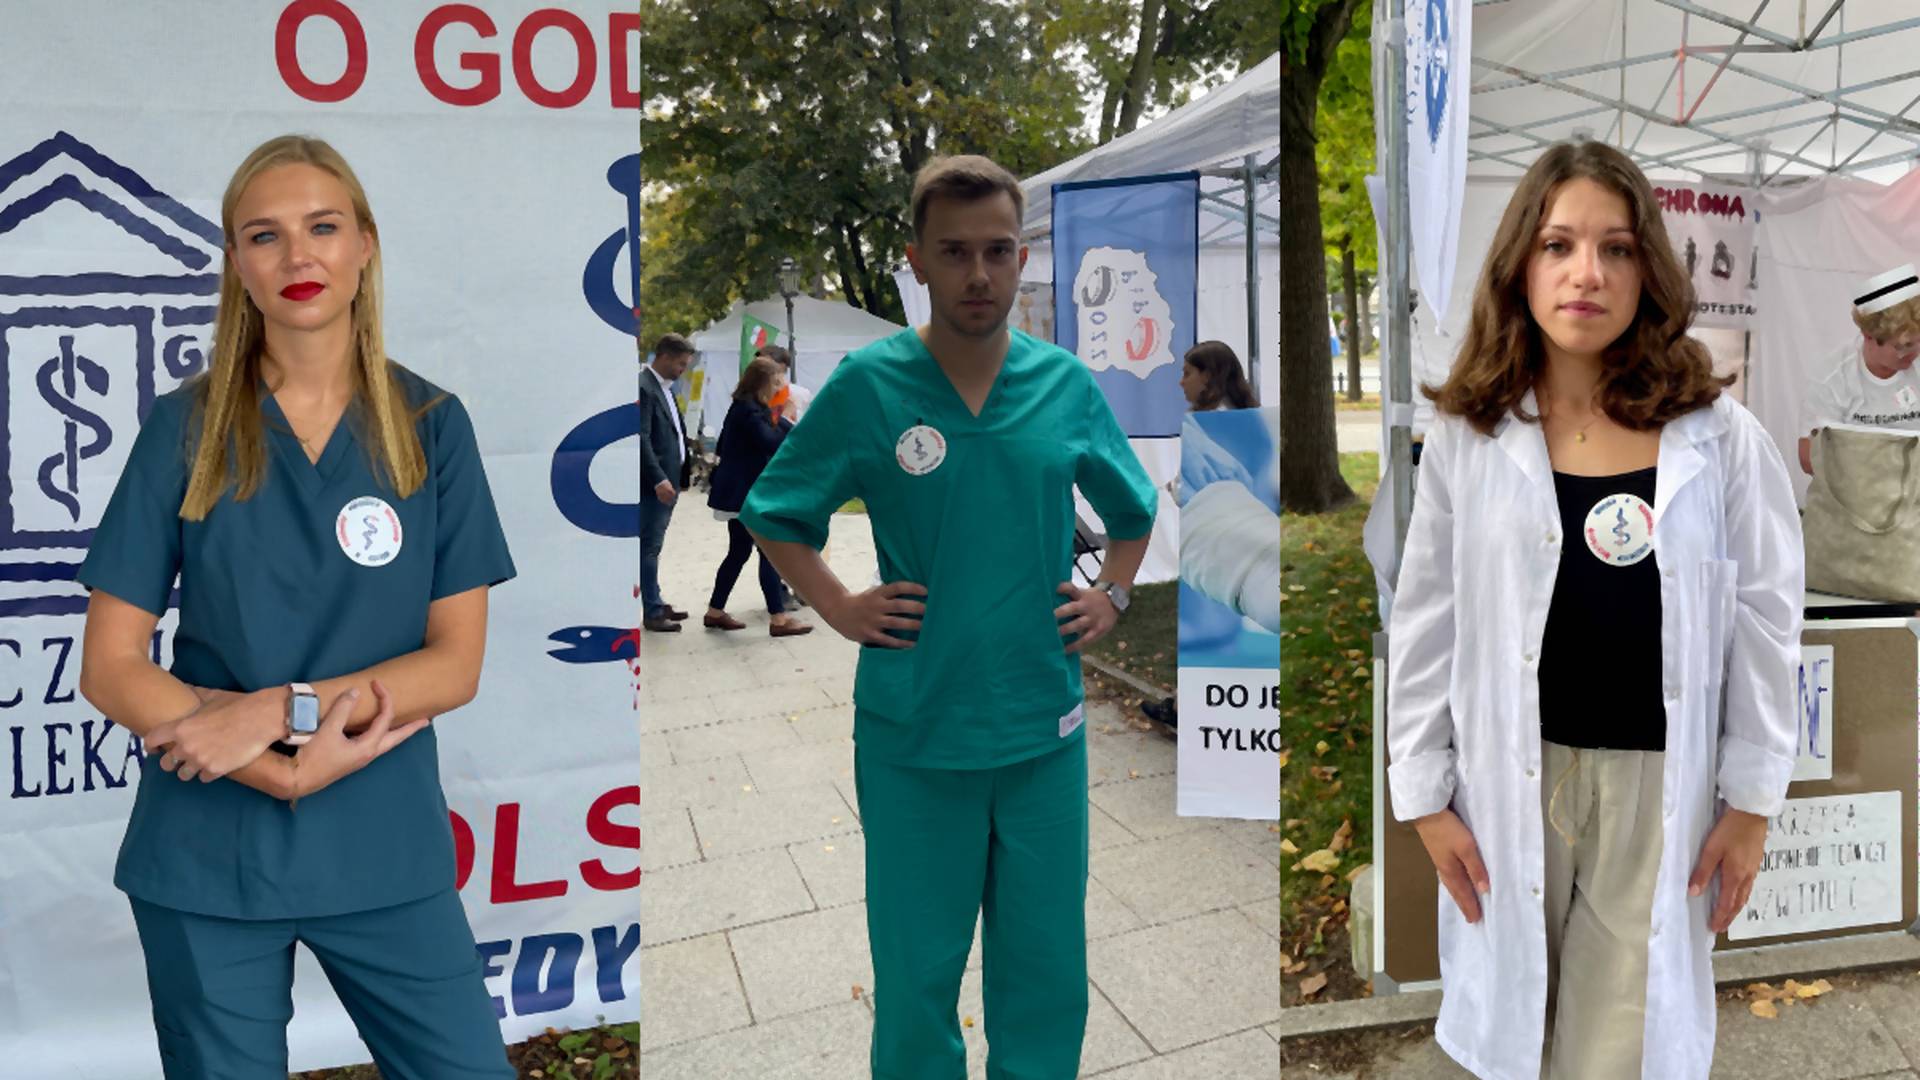 Młodzi lekarze w "białym miasteczku": Jesteśmy tu, bo chcemy lepszej przyszłości dla pacjentów